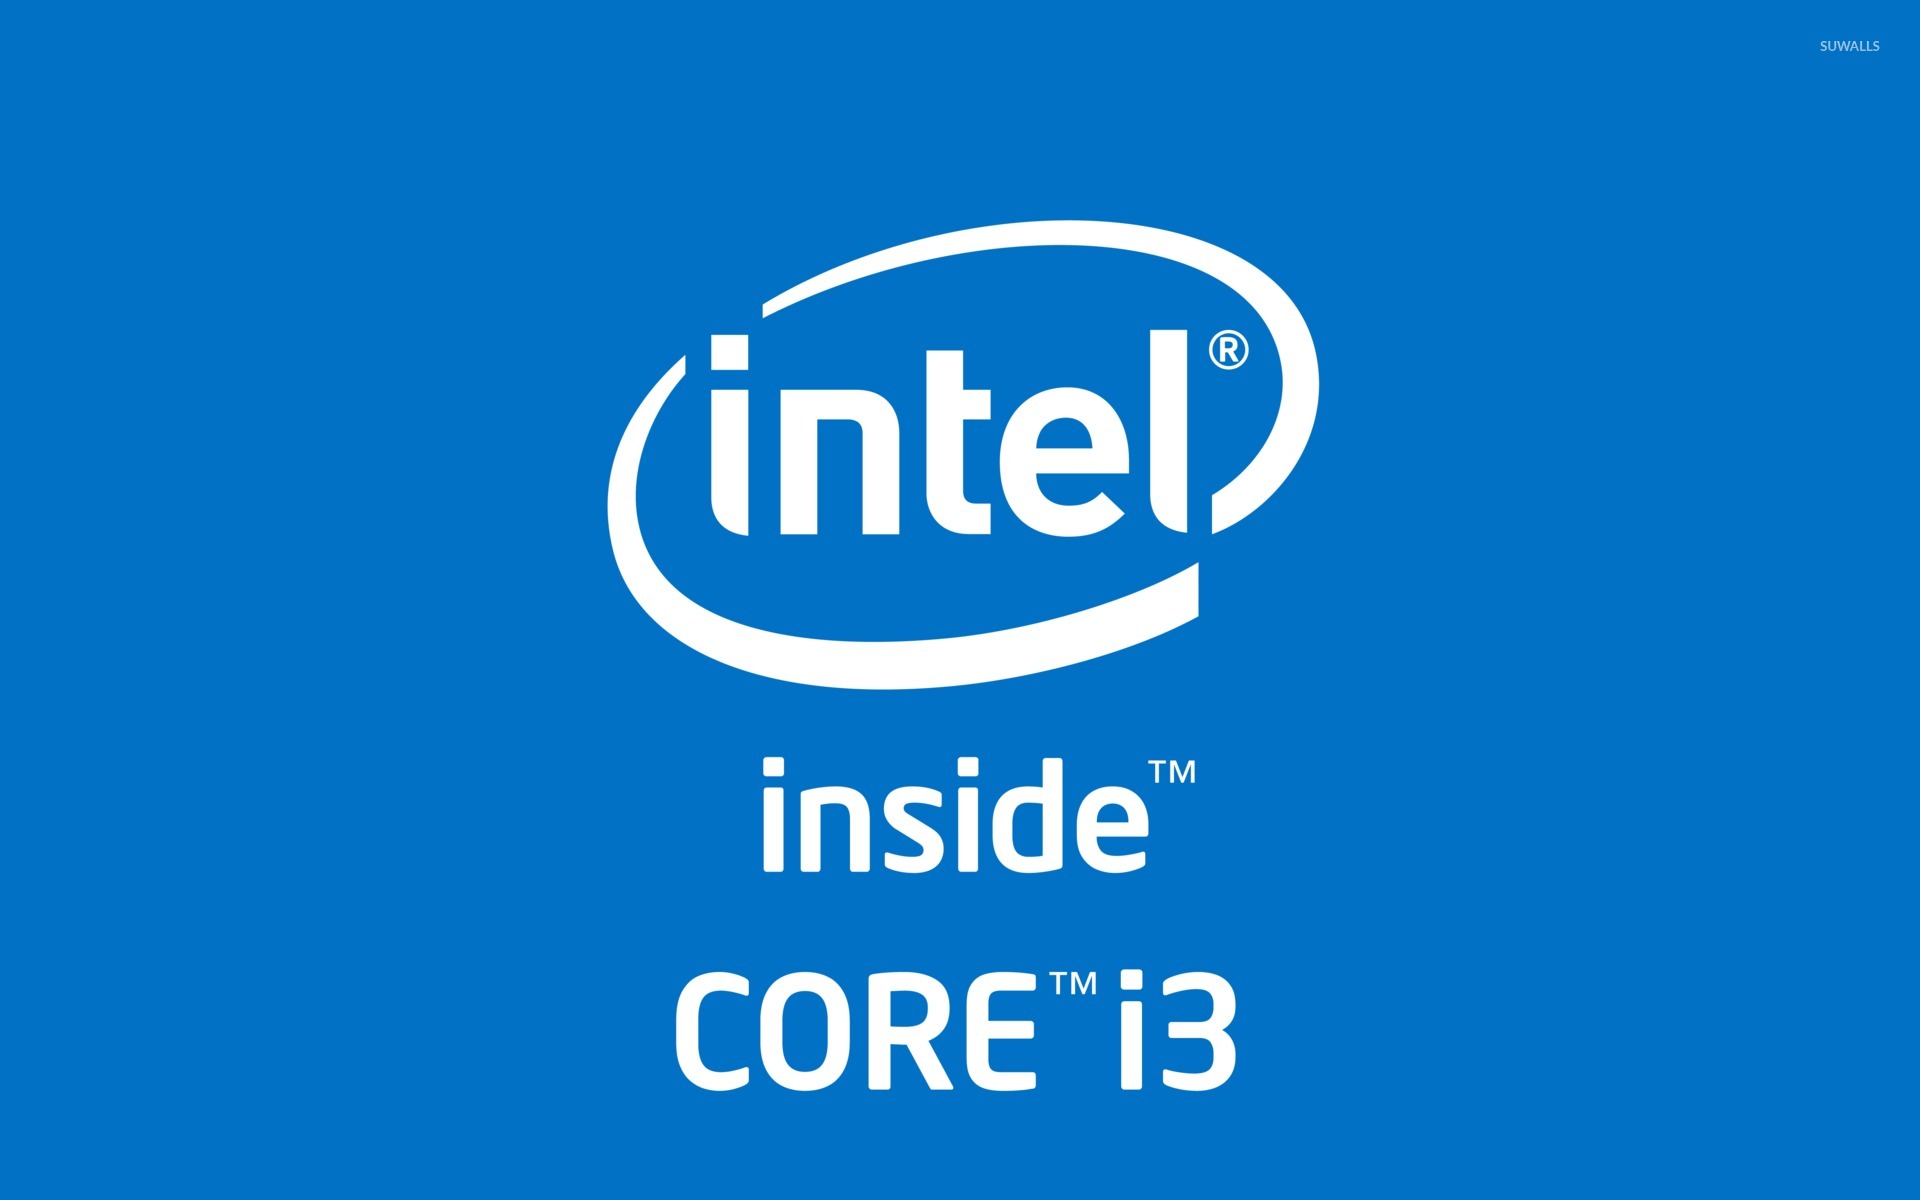 Интел е. Intel Core i3 logo. Intel Core i3 inside. Процессор Intel Core i7 logo. Интел i-Core логотип.